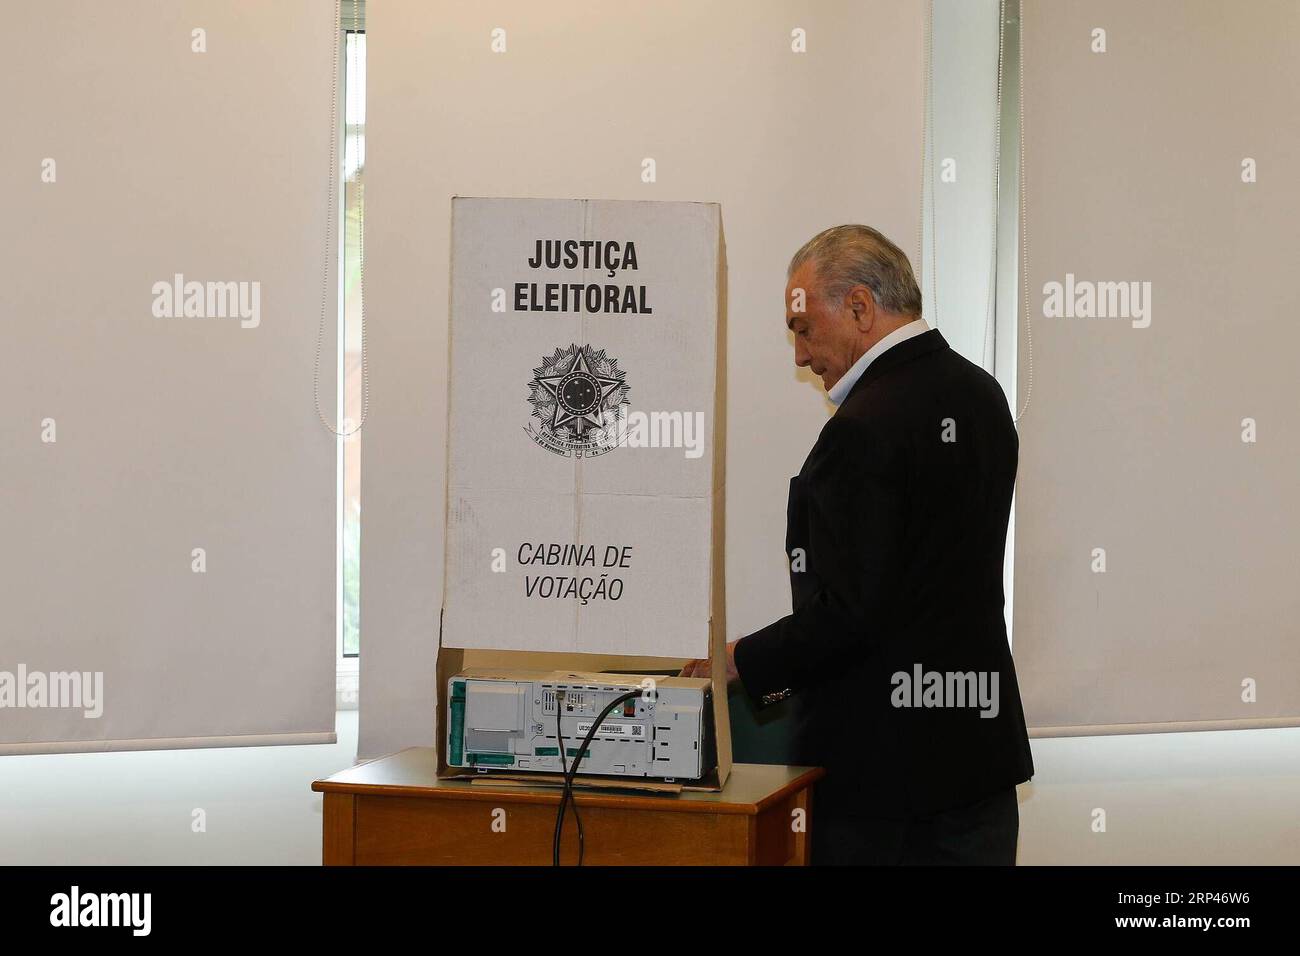 (181028) -- SAN PAOLO, 28 ottobre 2018 -- il presidente brasiliano Michel Temer esprime il suo voto durante il secondo turno delle elezioni generali brasiliane a San Paolo, Brasile, il 28 ottobre 2018. Il secondo turno delle elezioni generali brasiliane è iniziato domenica mattina, con gli elettori di tutto il paese che si dirigono verso i sondaggi per scegliere un nuovo presidente e 14 governatori statali. Presidenza del Brasile/) BRASILE-SAN PAOLO-ELEZIONI GENERALI-SECONDO TURNO CesarxItibere PUBLICATIONxNOTxINxCHN Foto Stock